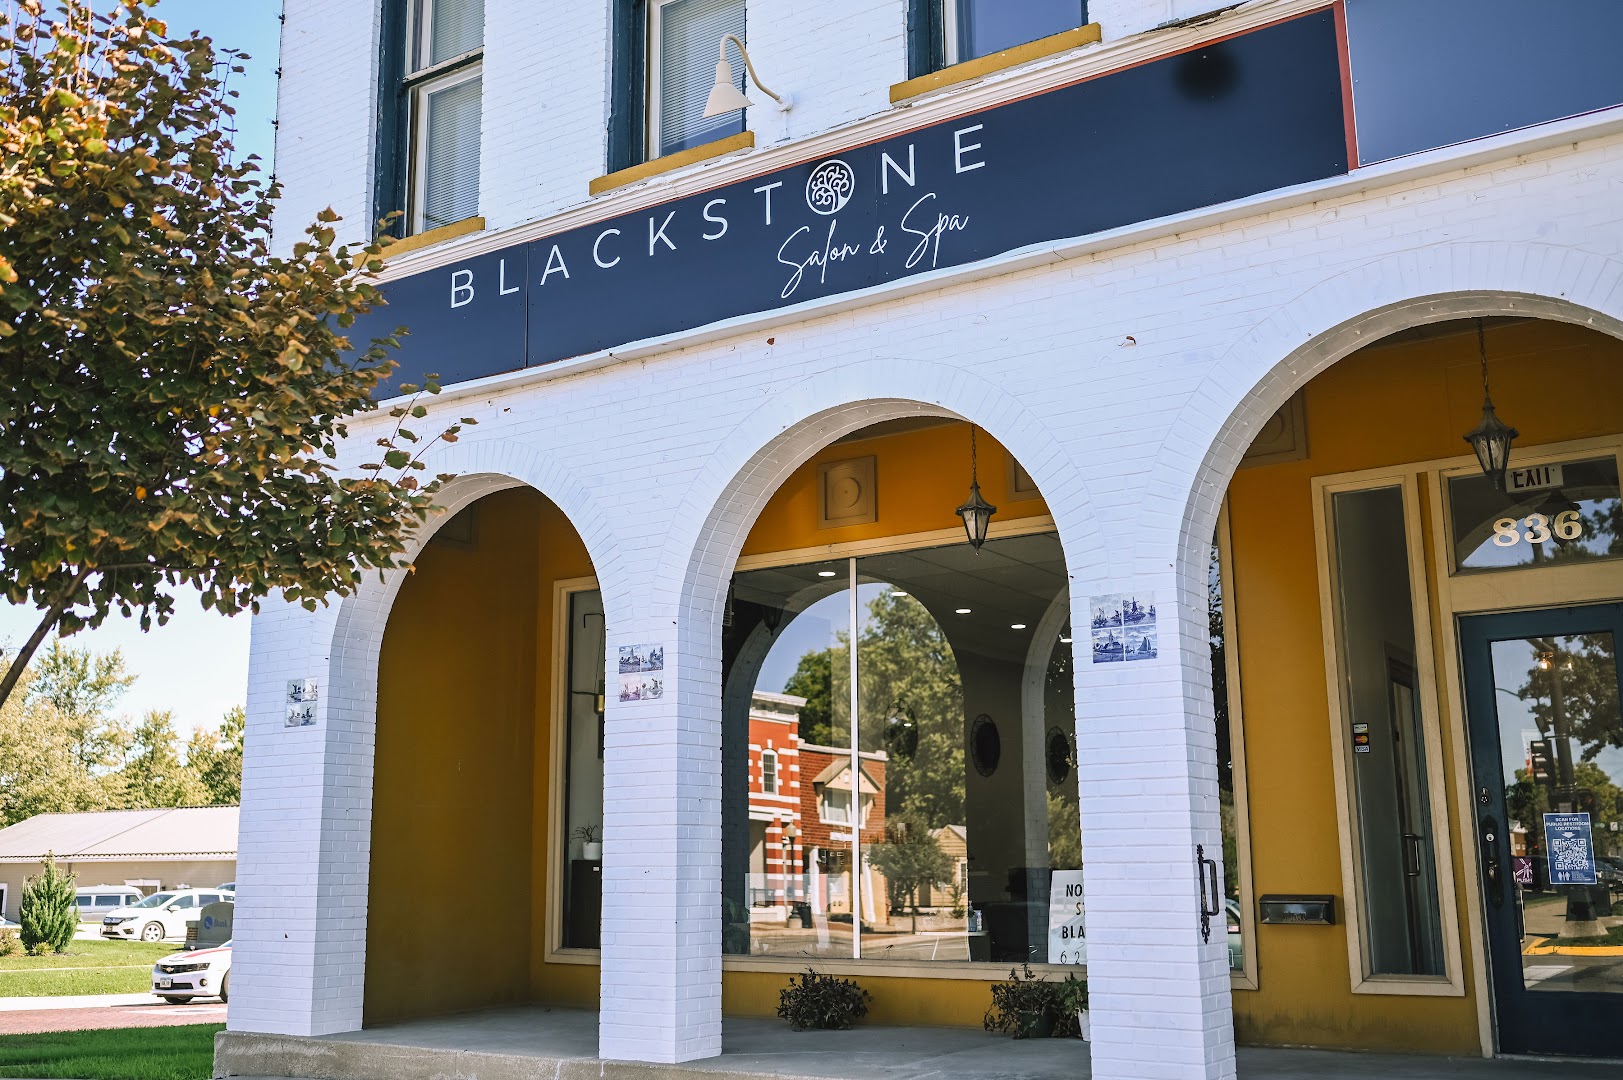 Blackstone Salon and Spa